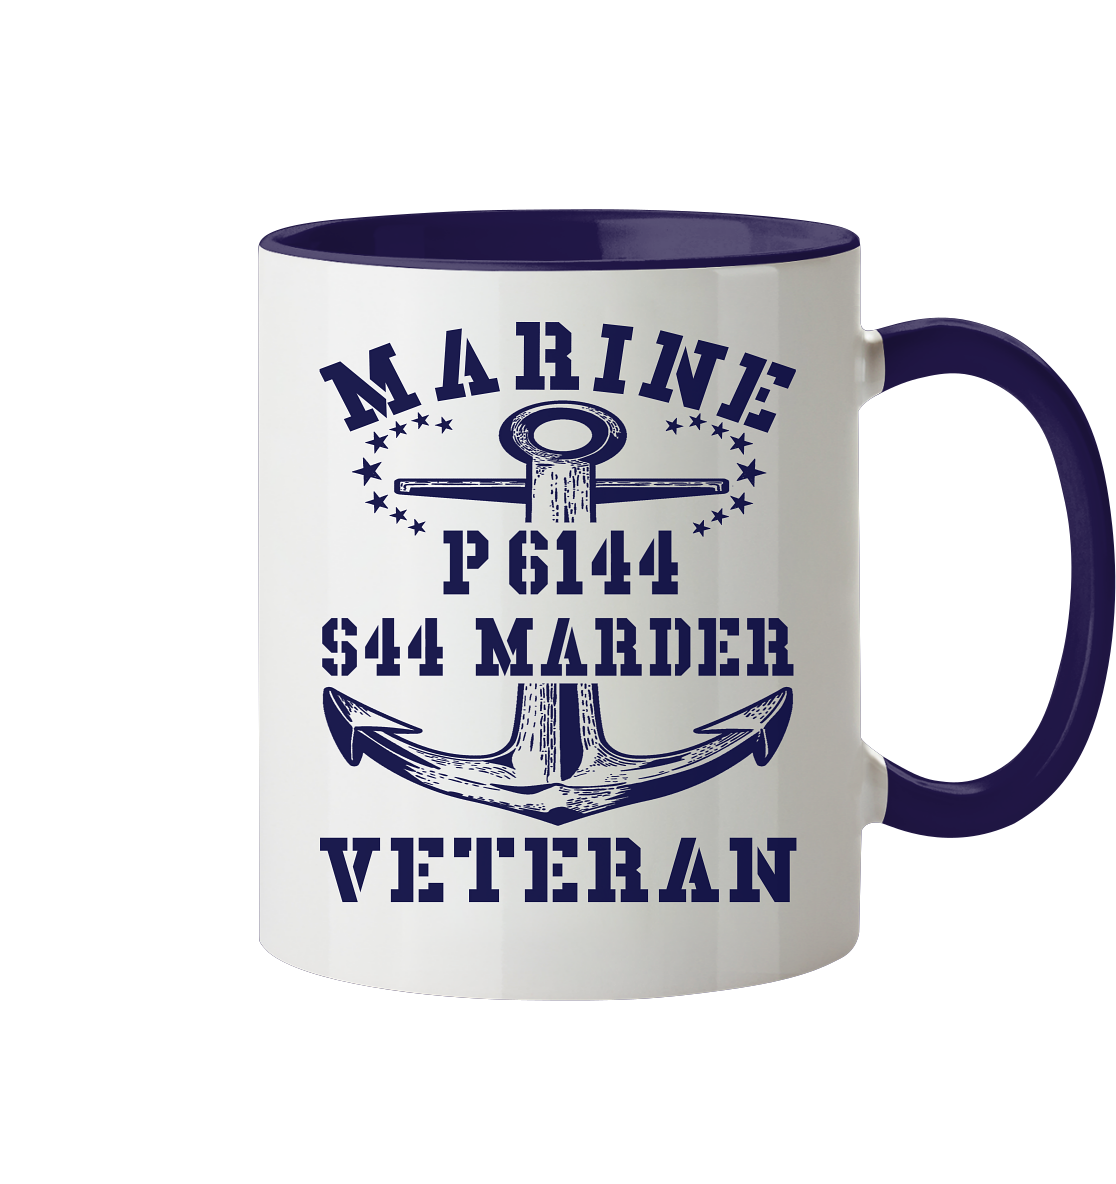 P6144 S44 MARDER Marine Veteran - Tasse zweifarbig